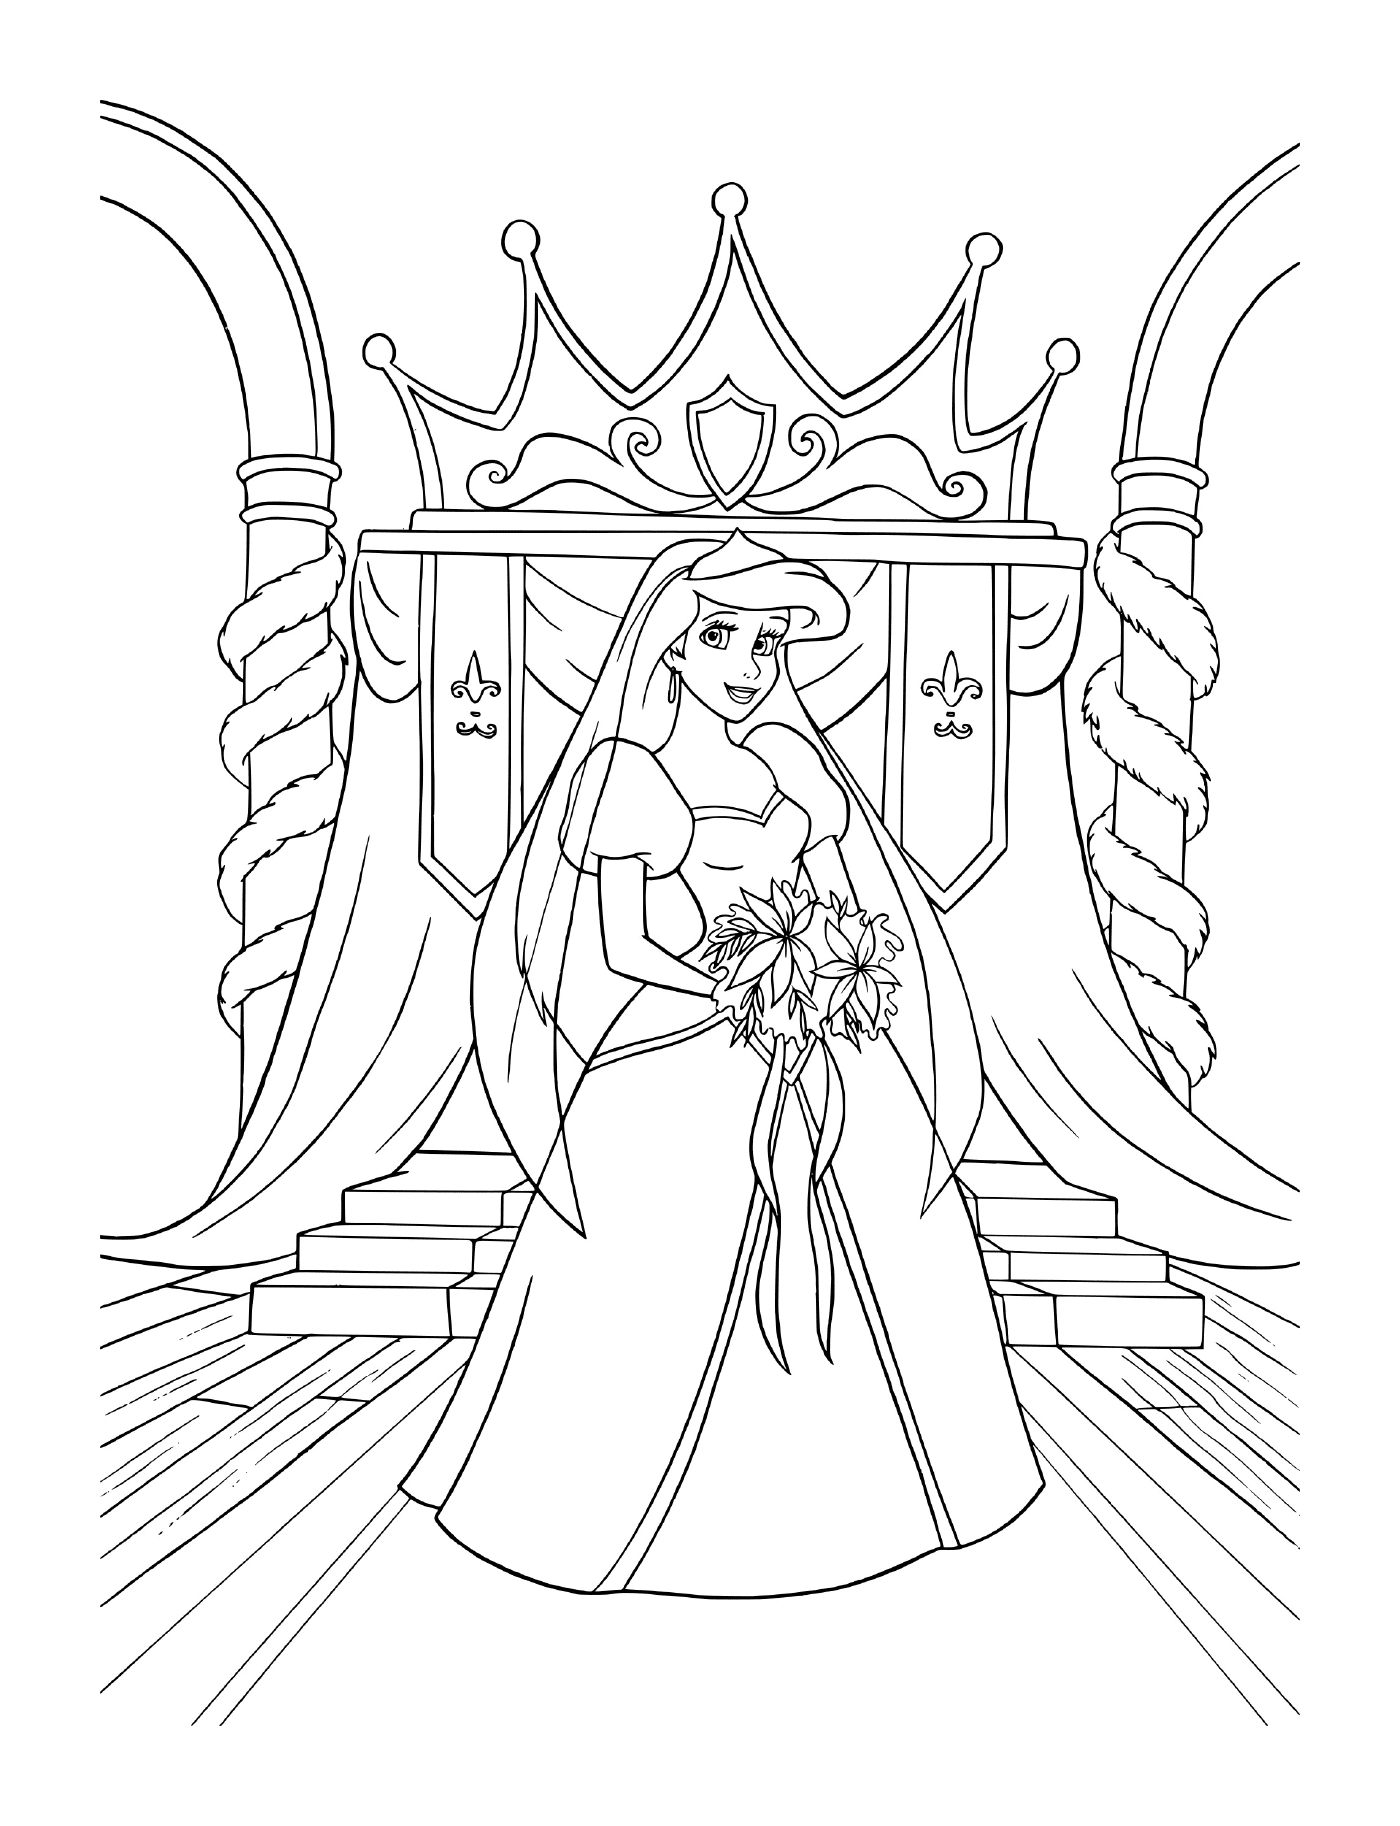  Una sposa in abito da sposa seduta su un trono 